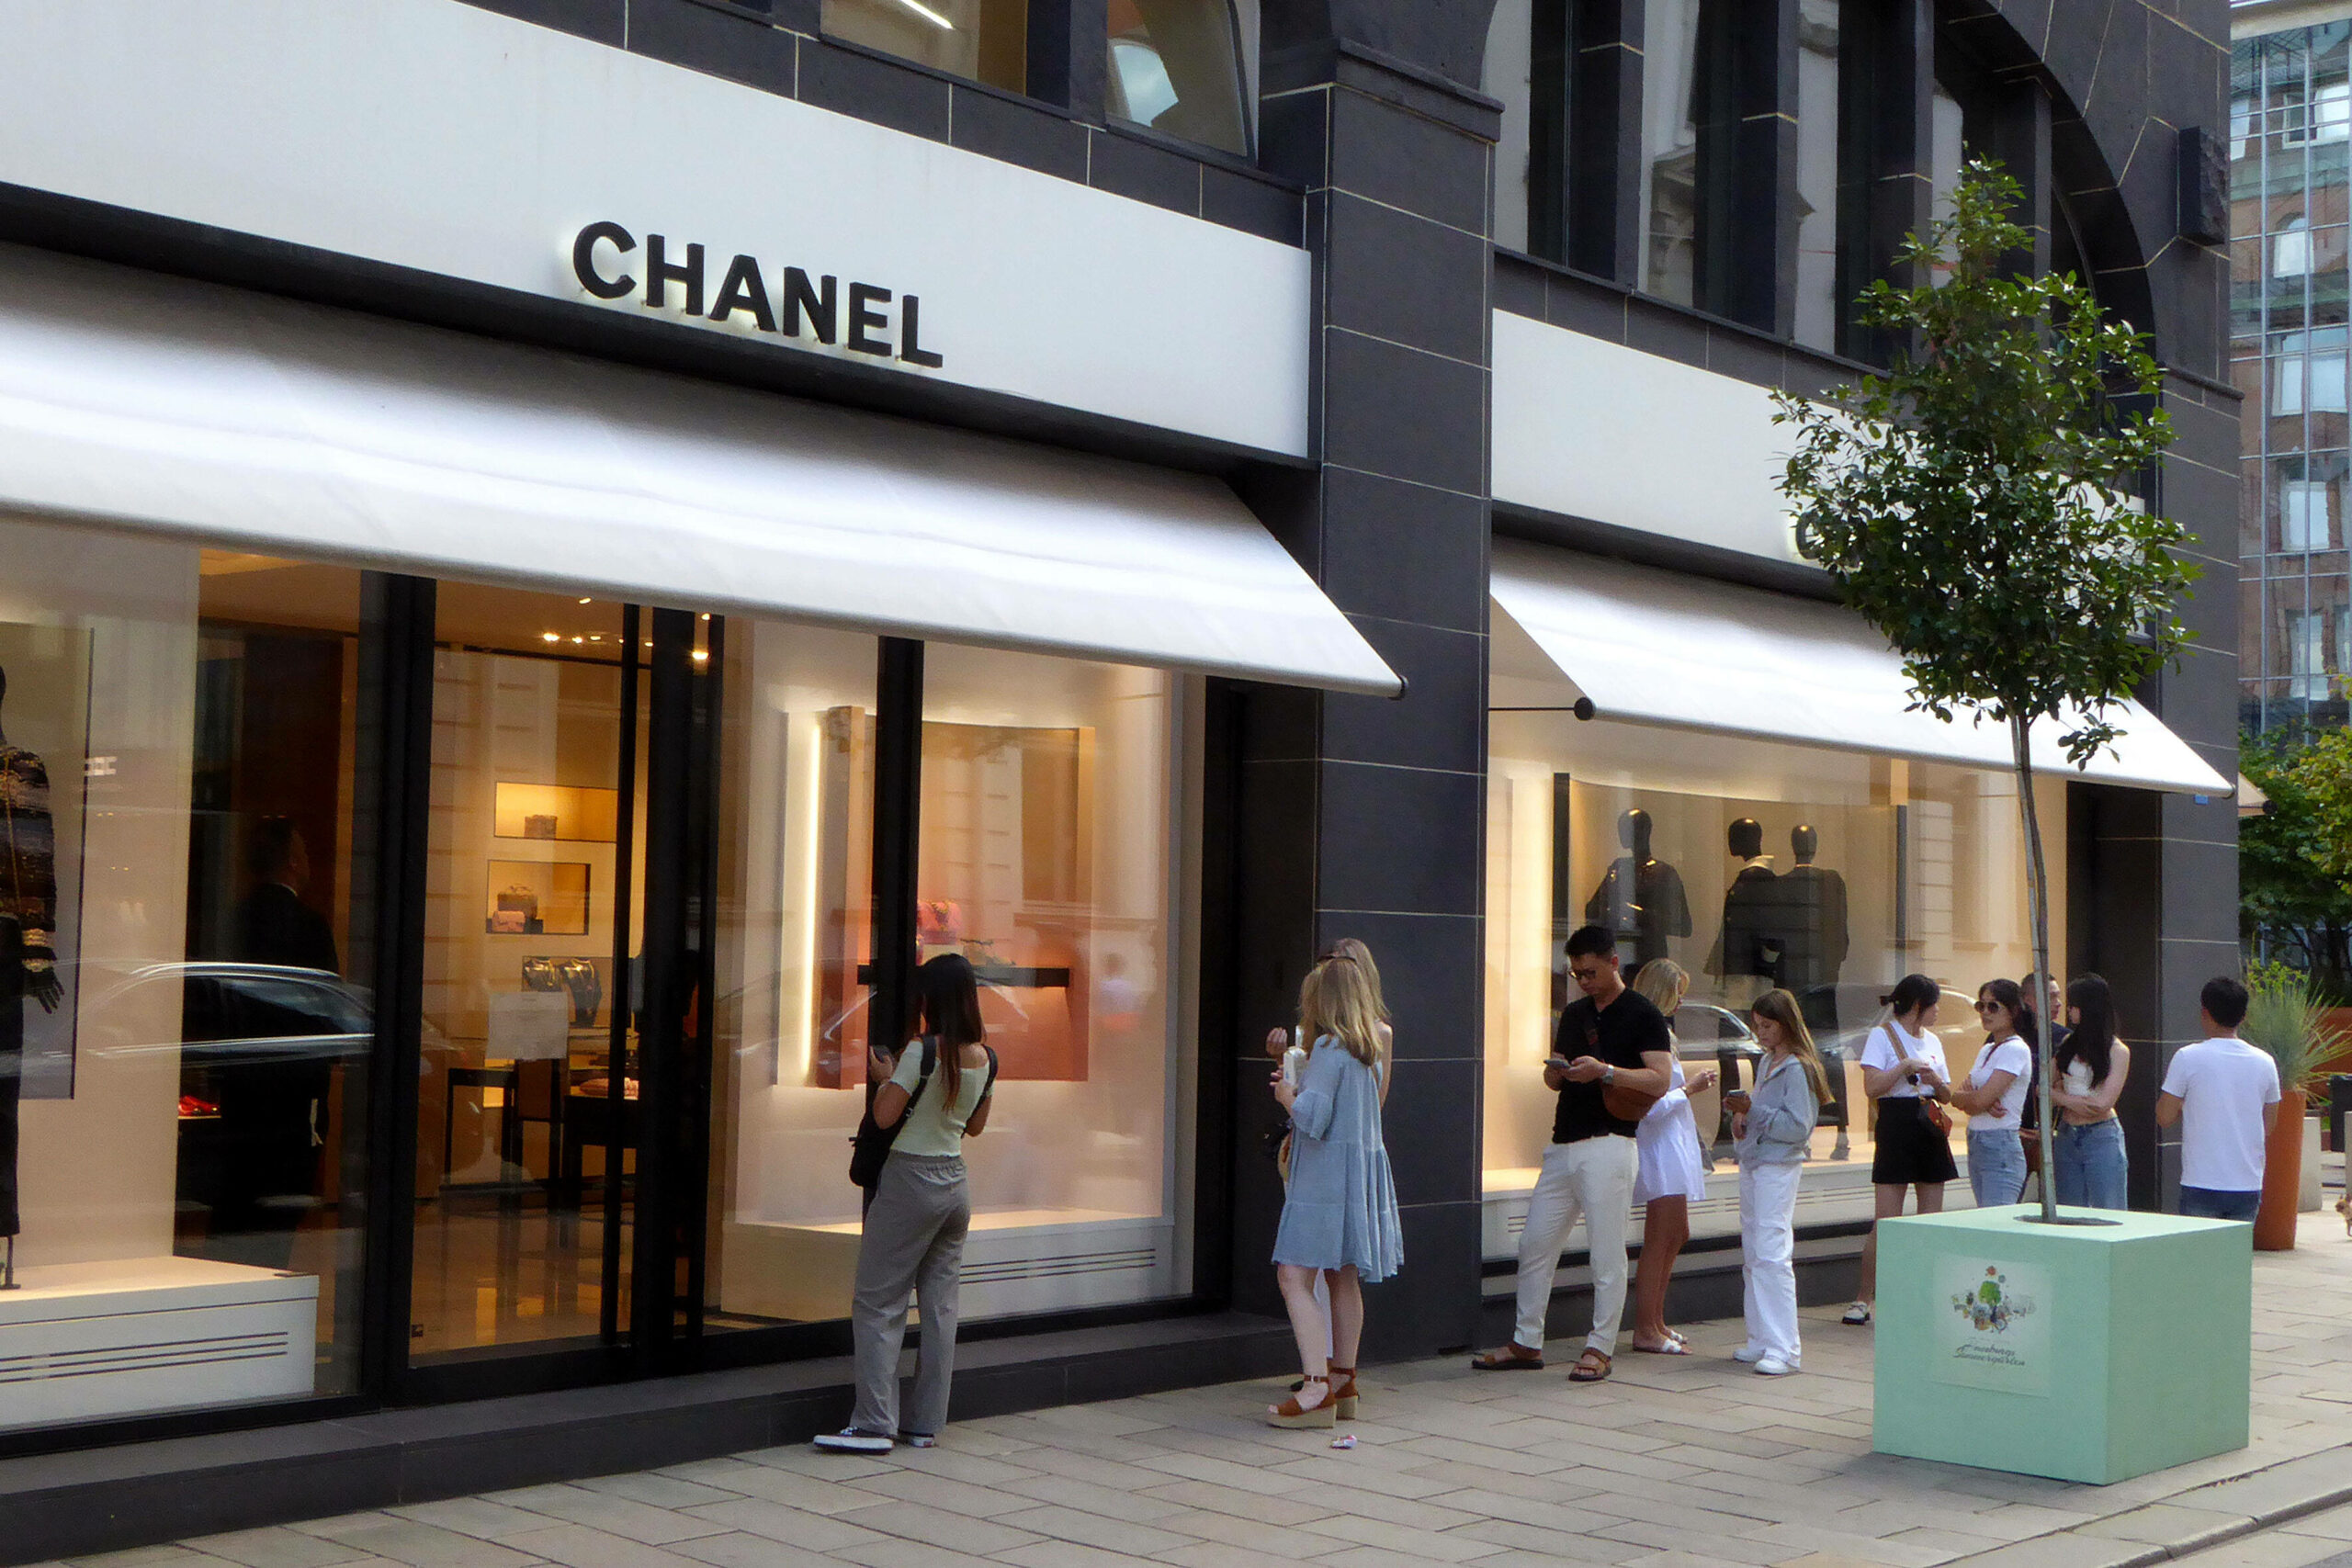 Die Chanel-Boutique am Neuen Wall in der Hamburger Neustadt: Am Sonntagmorgen haben unbekannte Täter hier Taschen und Kleidung gestohlen. (Archivbild)